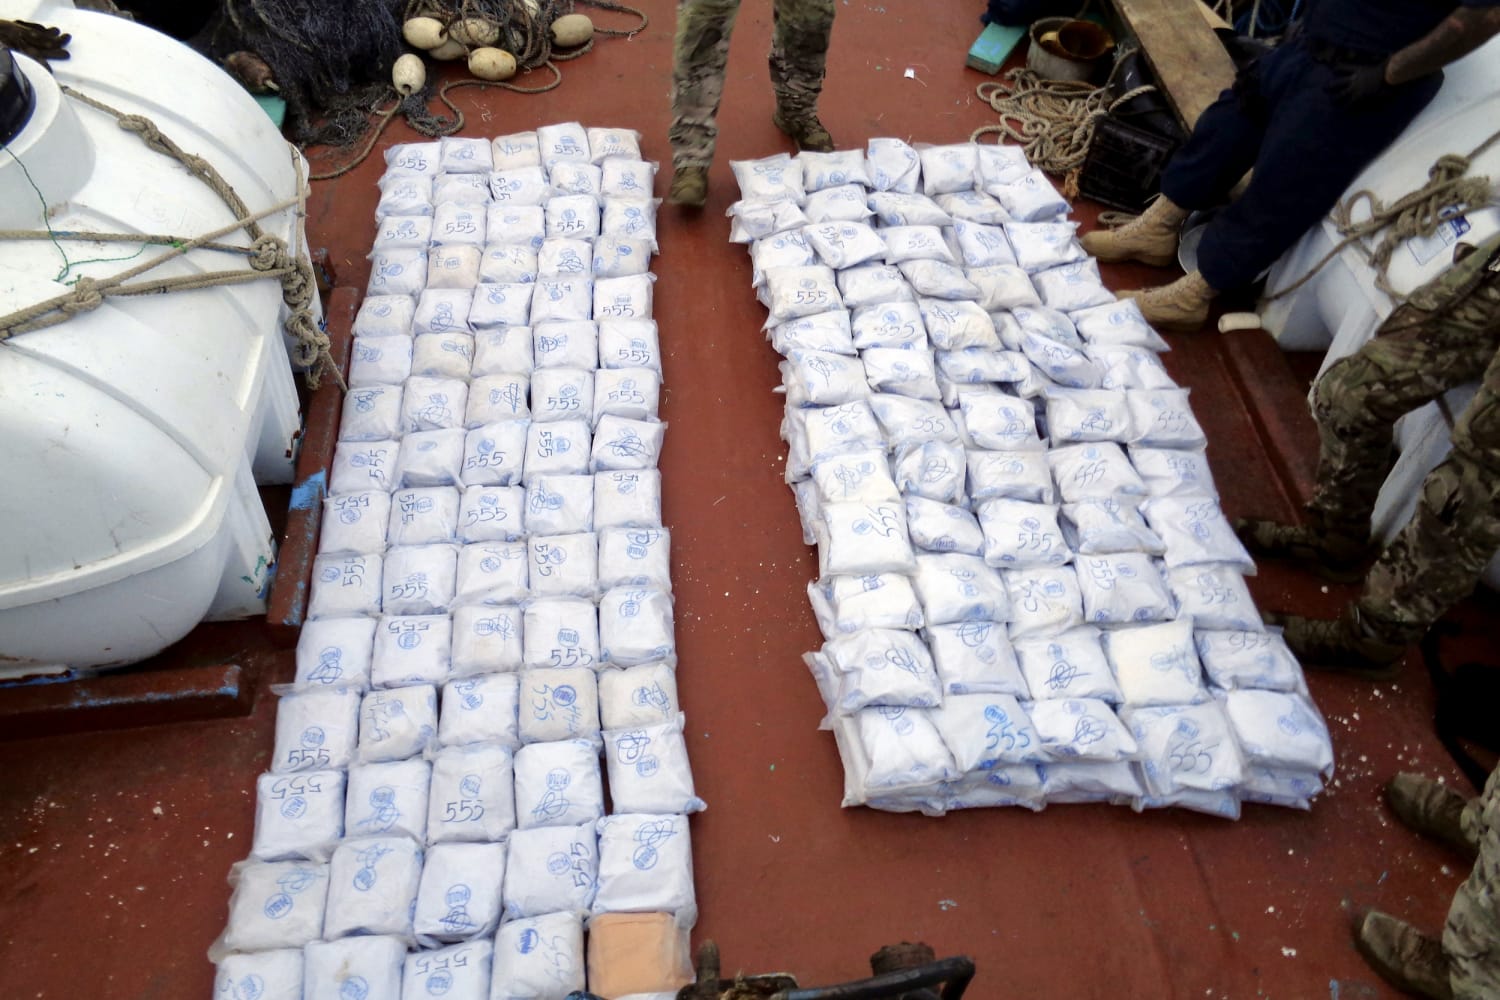 $4 million worth of heroin seized by U.S. Navy in Arabian Sea